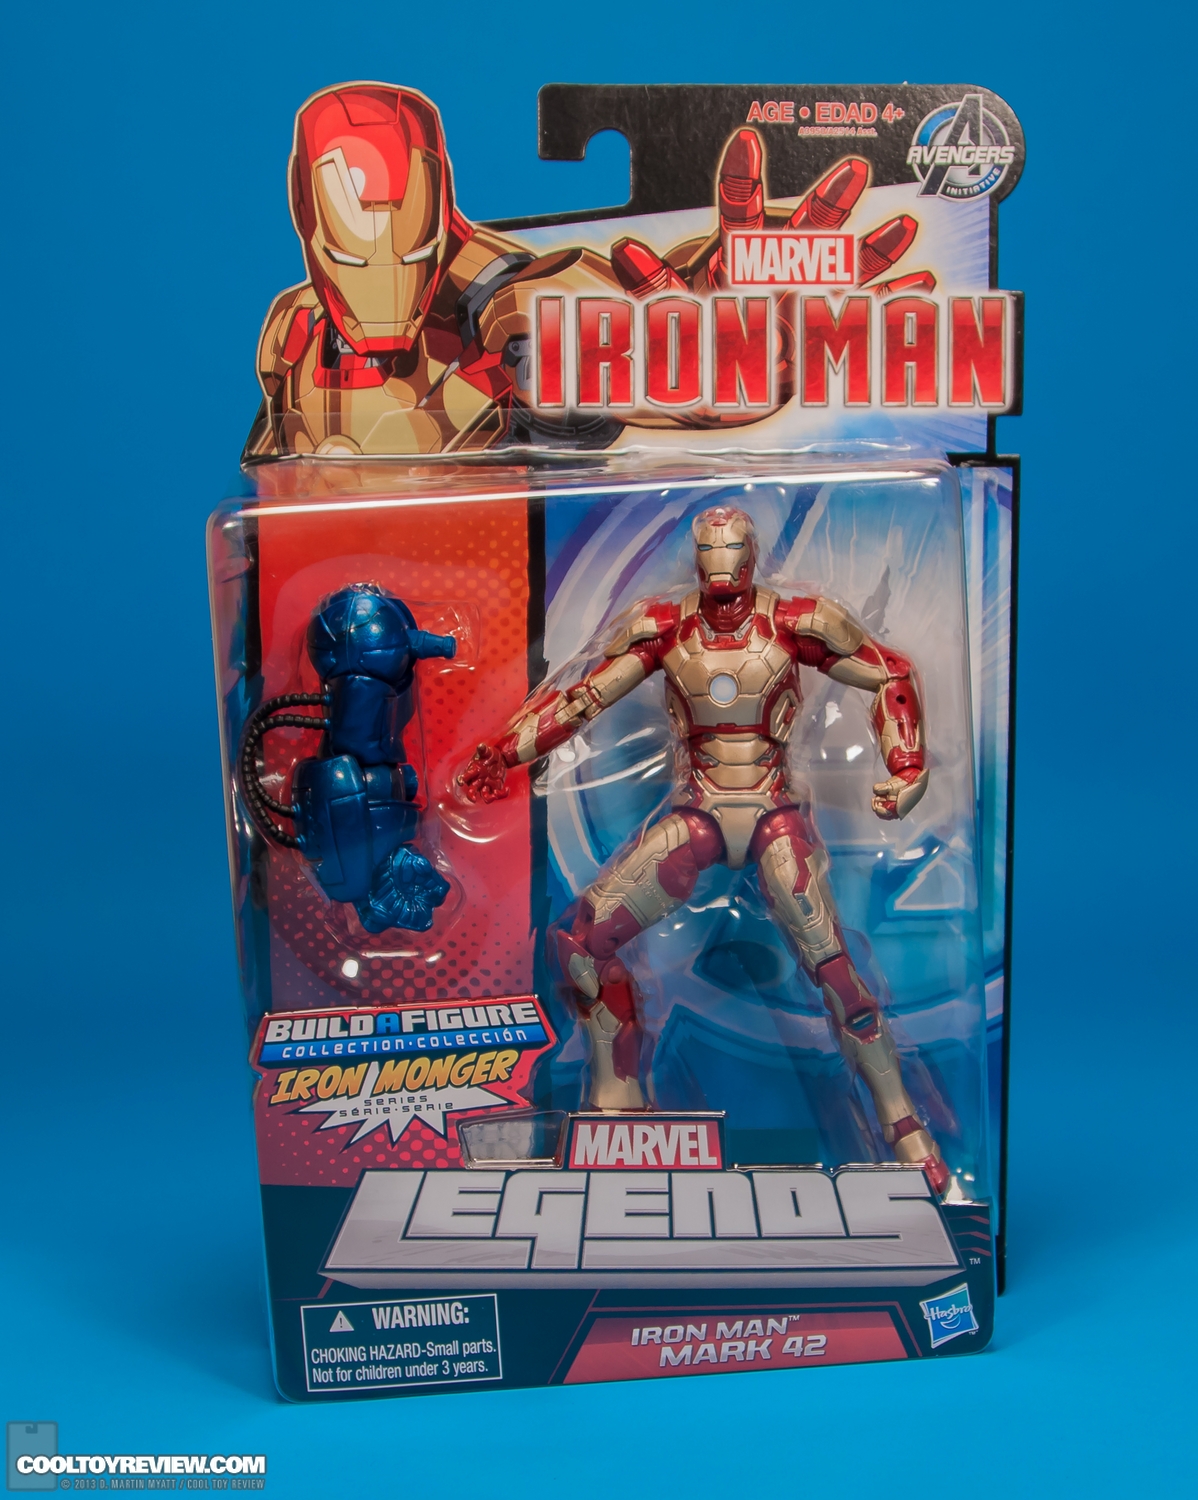 Iron-Man-Mark-42-Marvel-Legends-Iron-Monger-Series-013.jpg